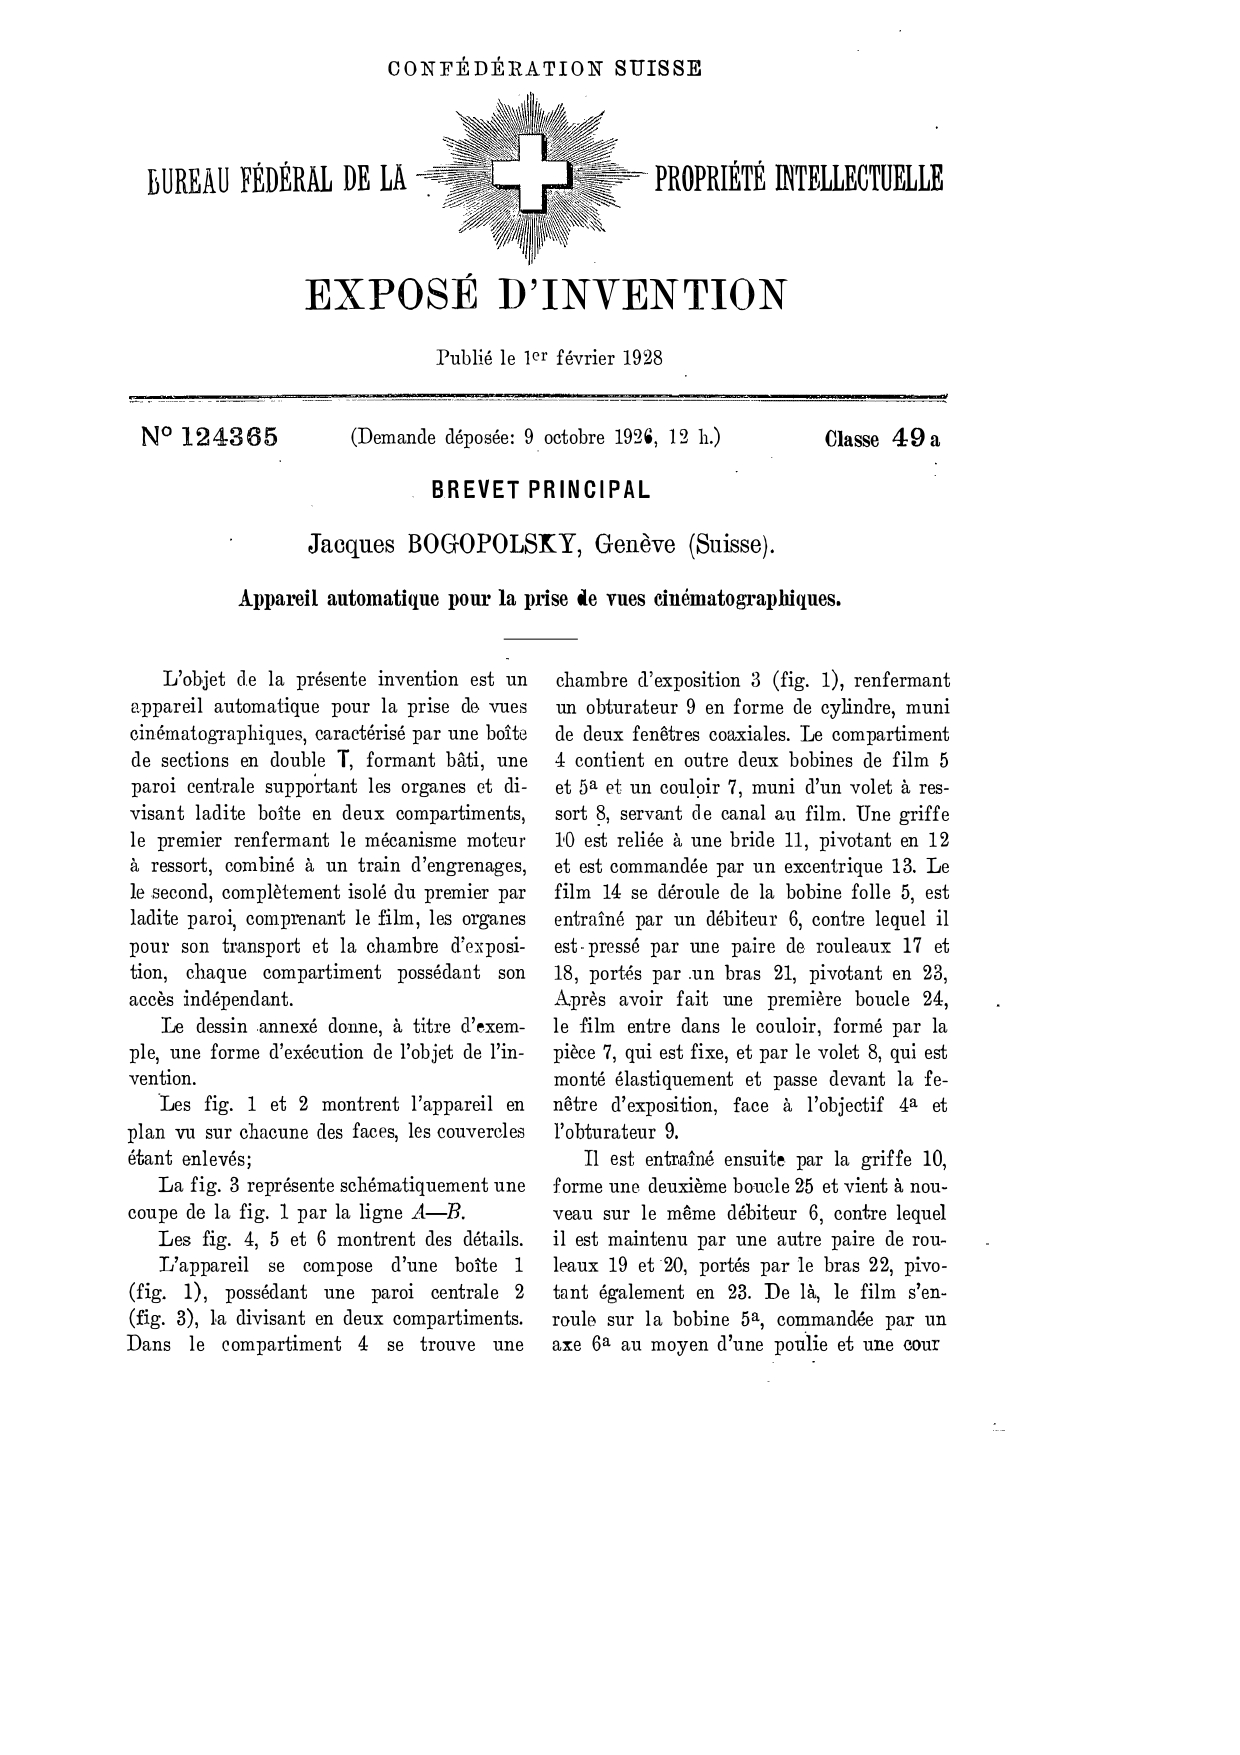 Première page du brevet, ici appelé exposé d’invention, de la caméra qui deviendra l’Auto Ciné modèle A. On retrouve le nom de Bogopolsky, le numéro du brevet, le lieu et la date. Le reste de la page est consacré au descriptif de l’appareil.